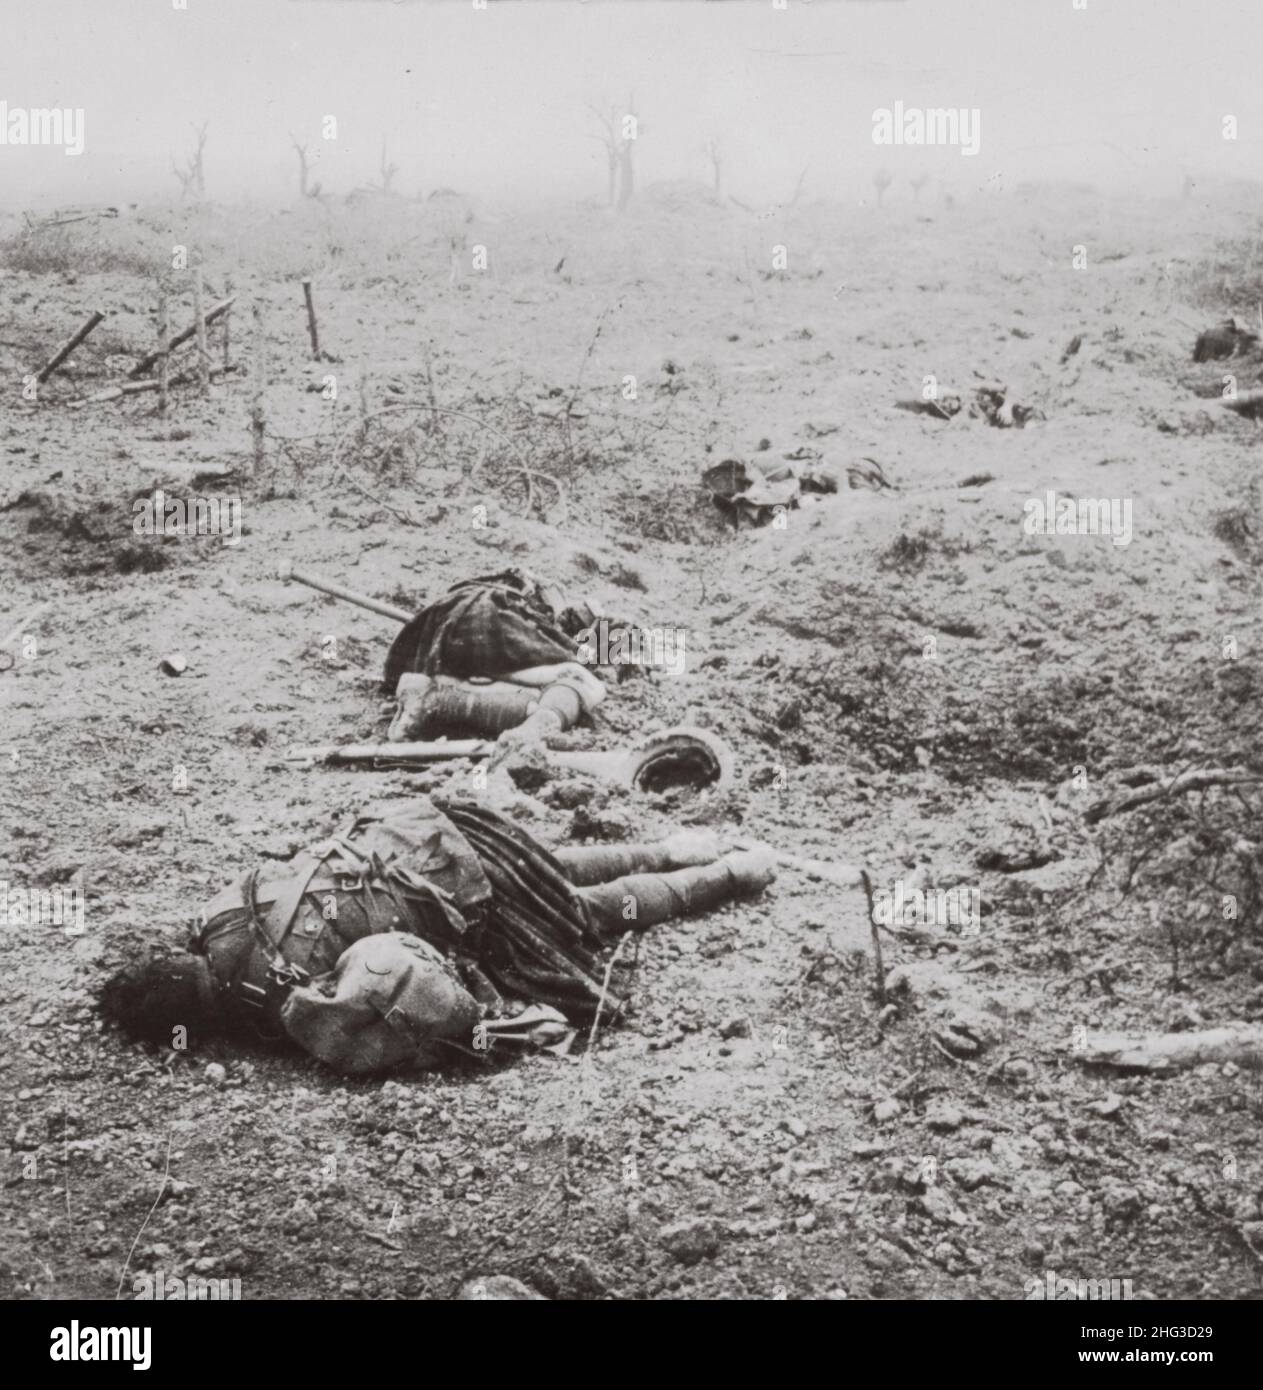 Archivfoto des Ersten Weltkriegs Tote schottische Soldaten. Stolze Männer des Nordens, die auf Flander's Fields kämpften. Erster Weltkrieg 1914-1918 Stockfoto